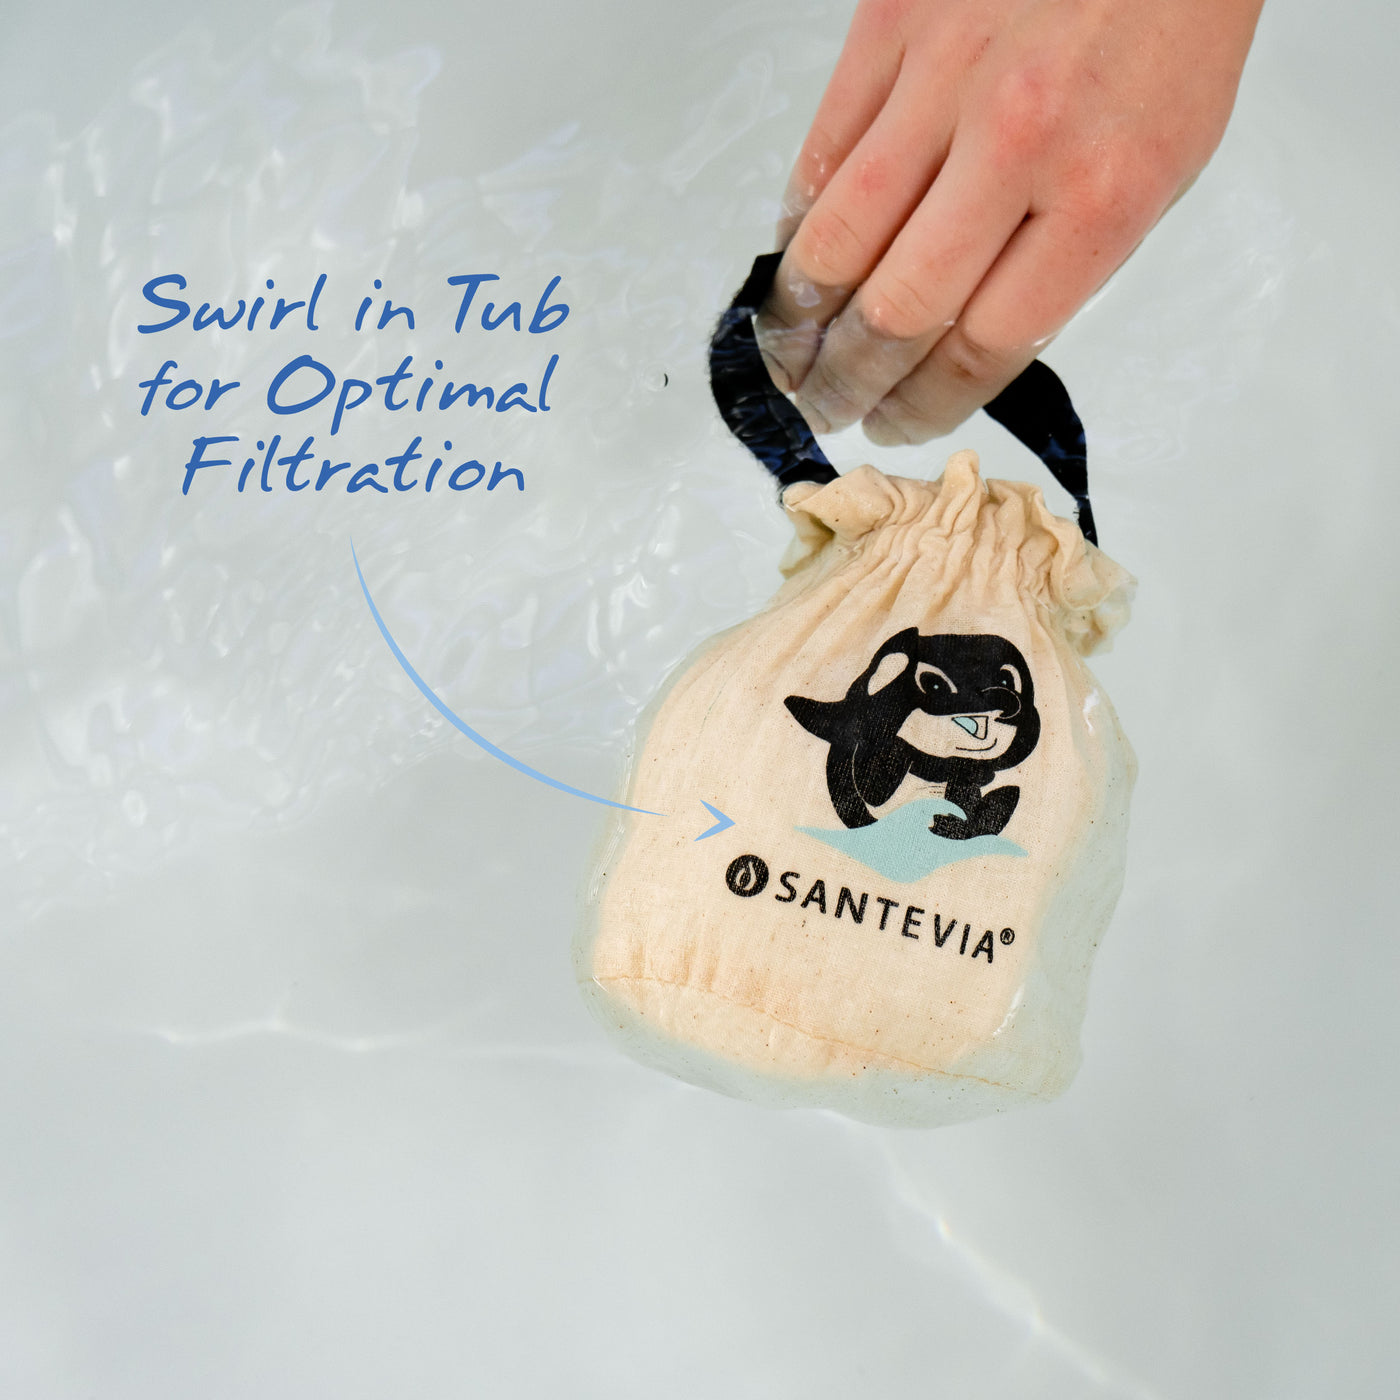 A Santevia Bath Filter being swirled in a bath tub. 